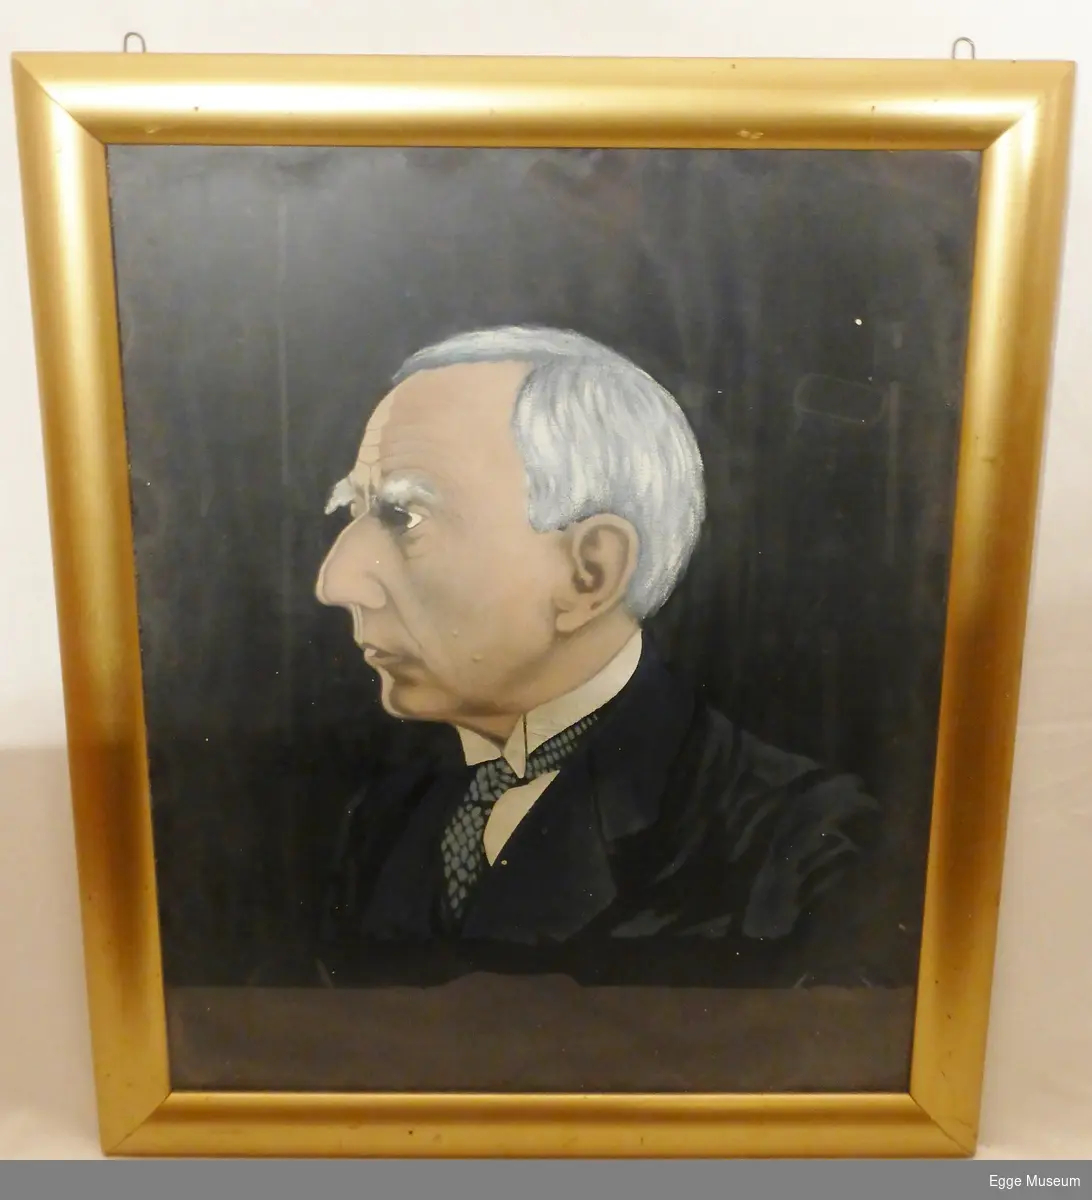 Portrett, sannsynligvis av Roald Amundsen. Bildet viser hans venstre profil. Han har på seg blå dress med svart slips med blå prikker på. Håret er grått, øyebrynene buskete og ansiktet bærer preg av alvor.